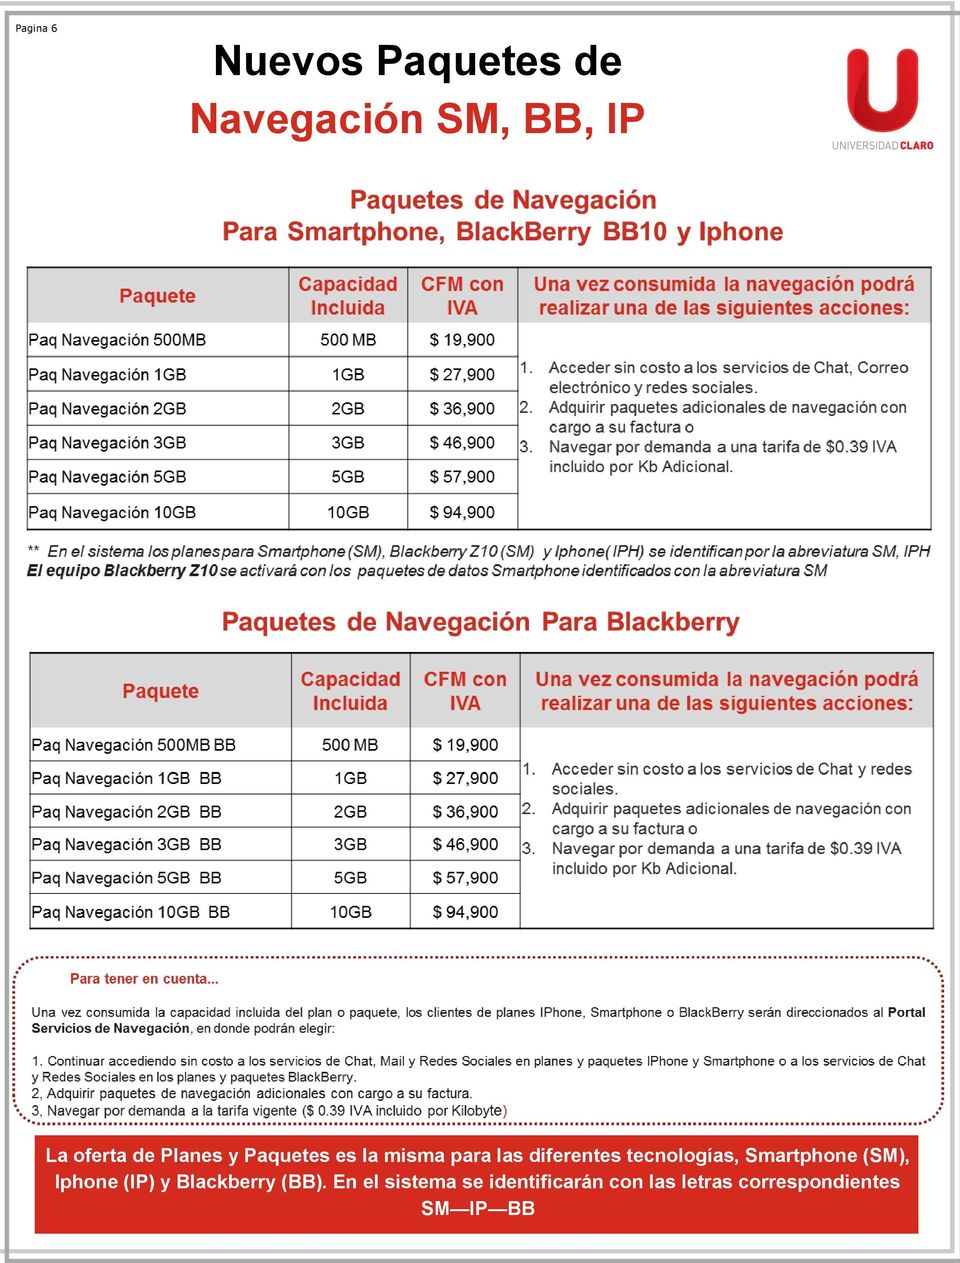 diferentes tecnologías, (SM), Iphone (IP) y Blackberry